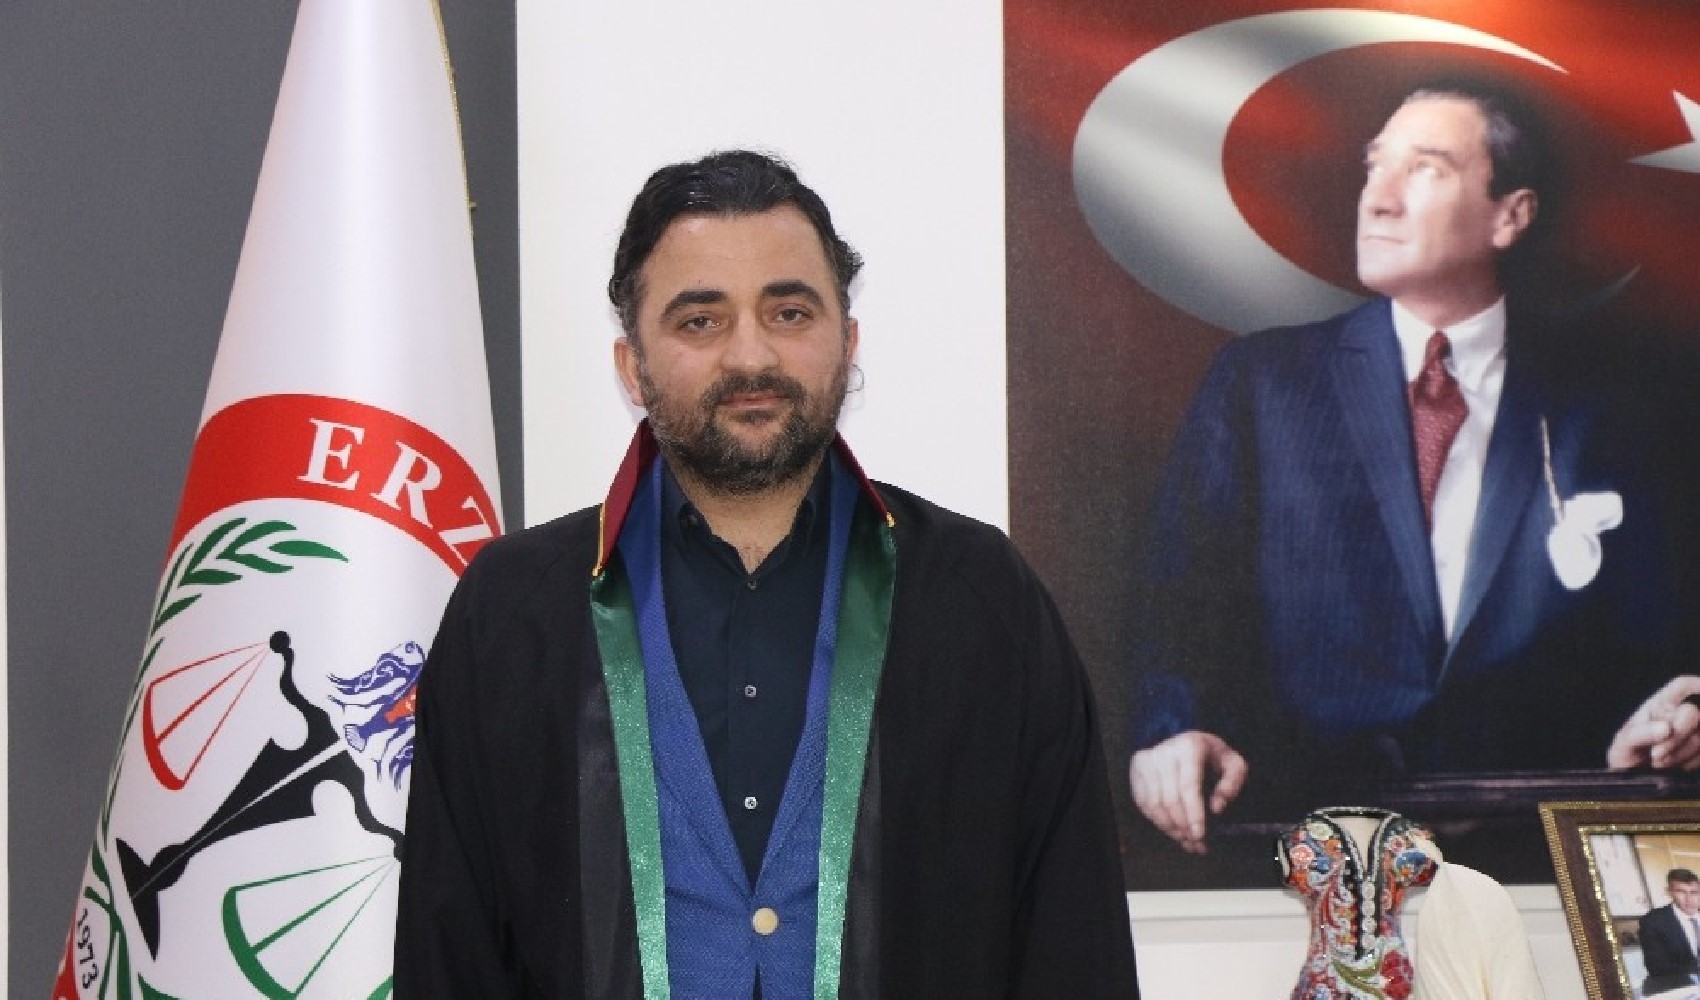 Erzincan Barosu Başkanı Av. Adem Aktürk: “Doğal afet değil, göz göre göre gelen…”